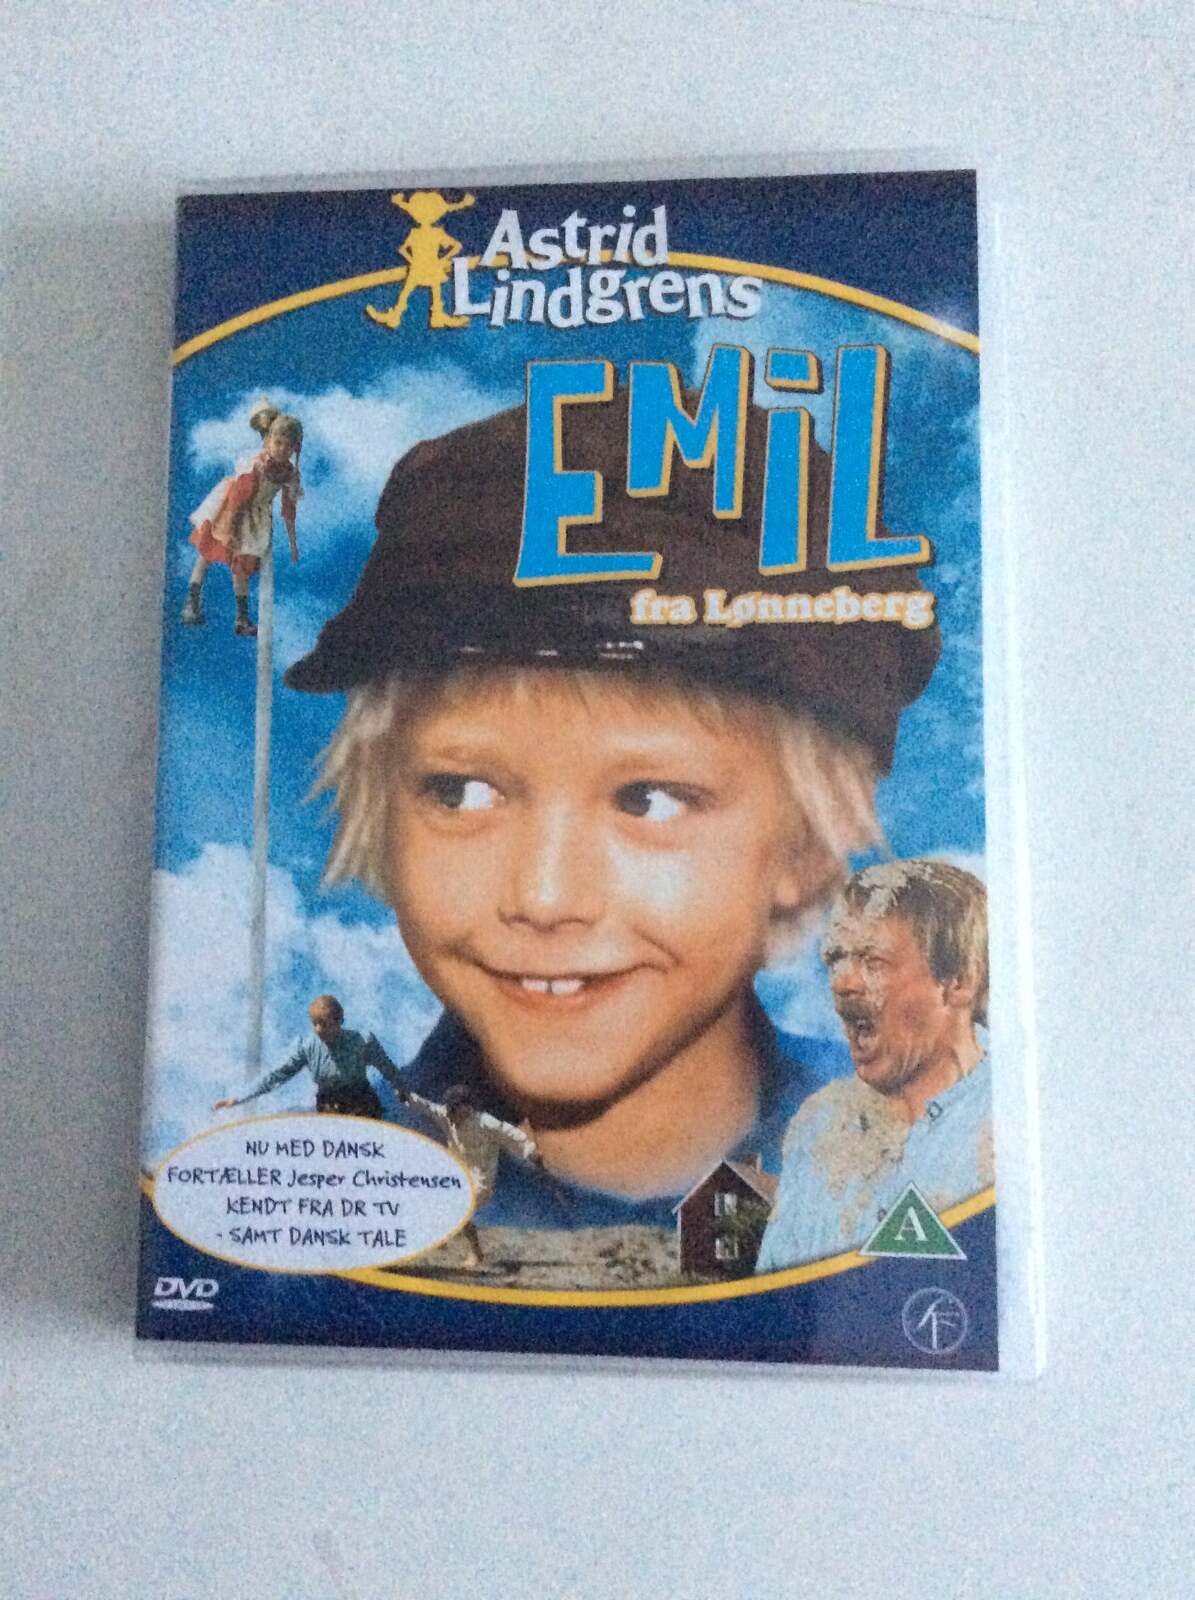 Emil fra Lønneberg, instruktør Astrid Lindgren, DVD dba.dk – Køb og Salg af Nyt og Brugt